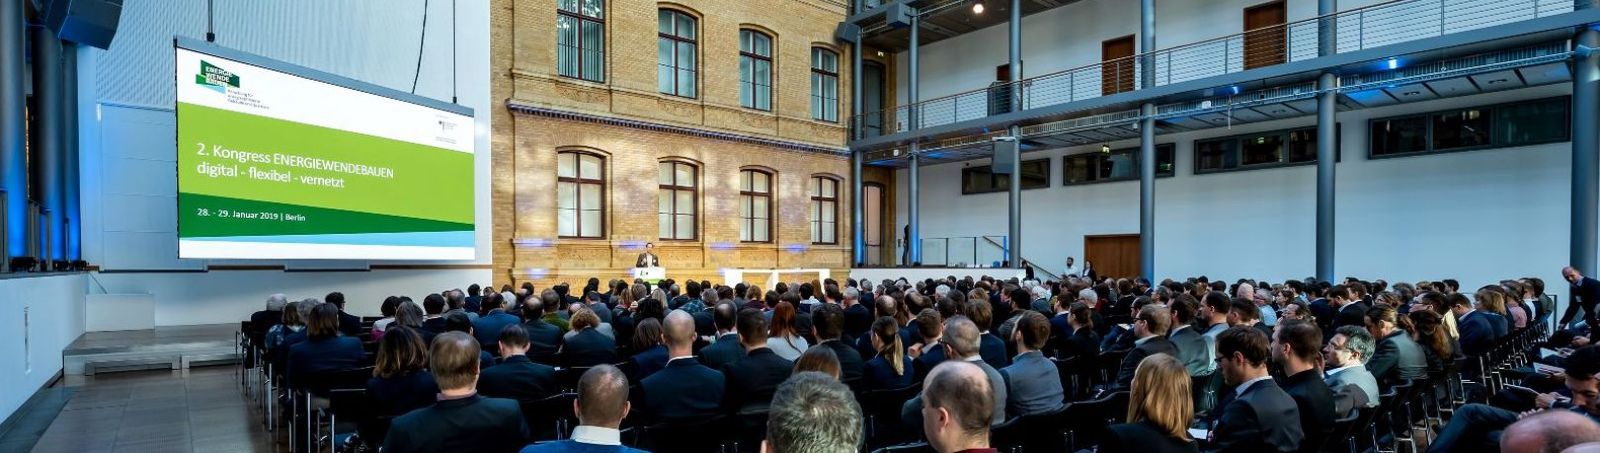 Mehrere hundert Expertinnen und Experten nahmen am 2. Kongress Energiewendebauen in Berlin teil.